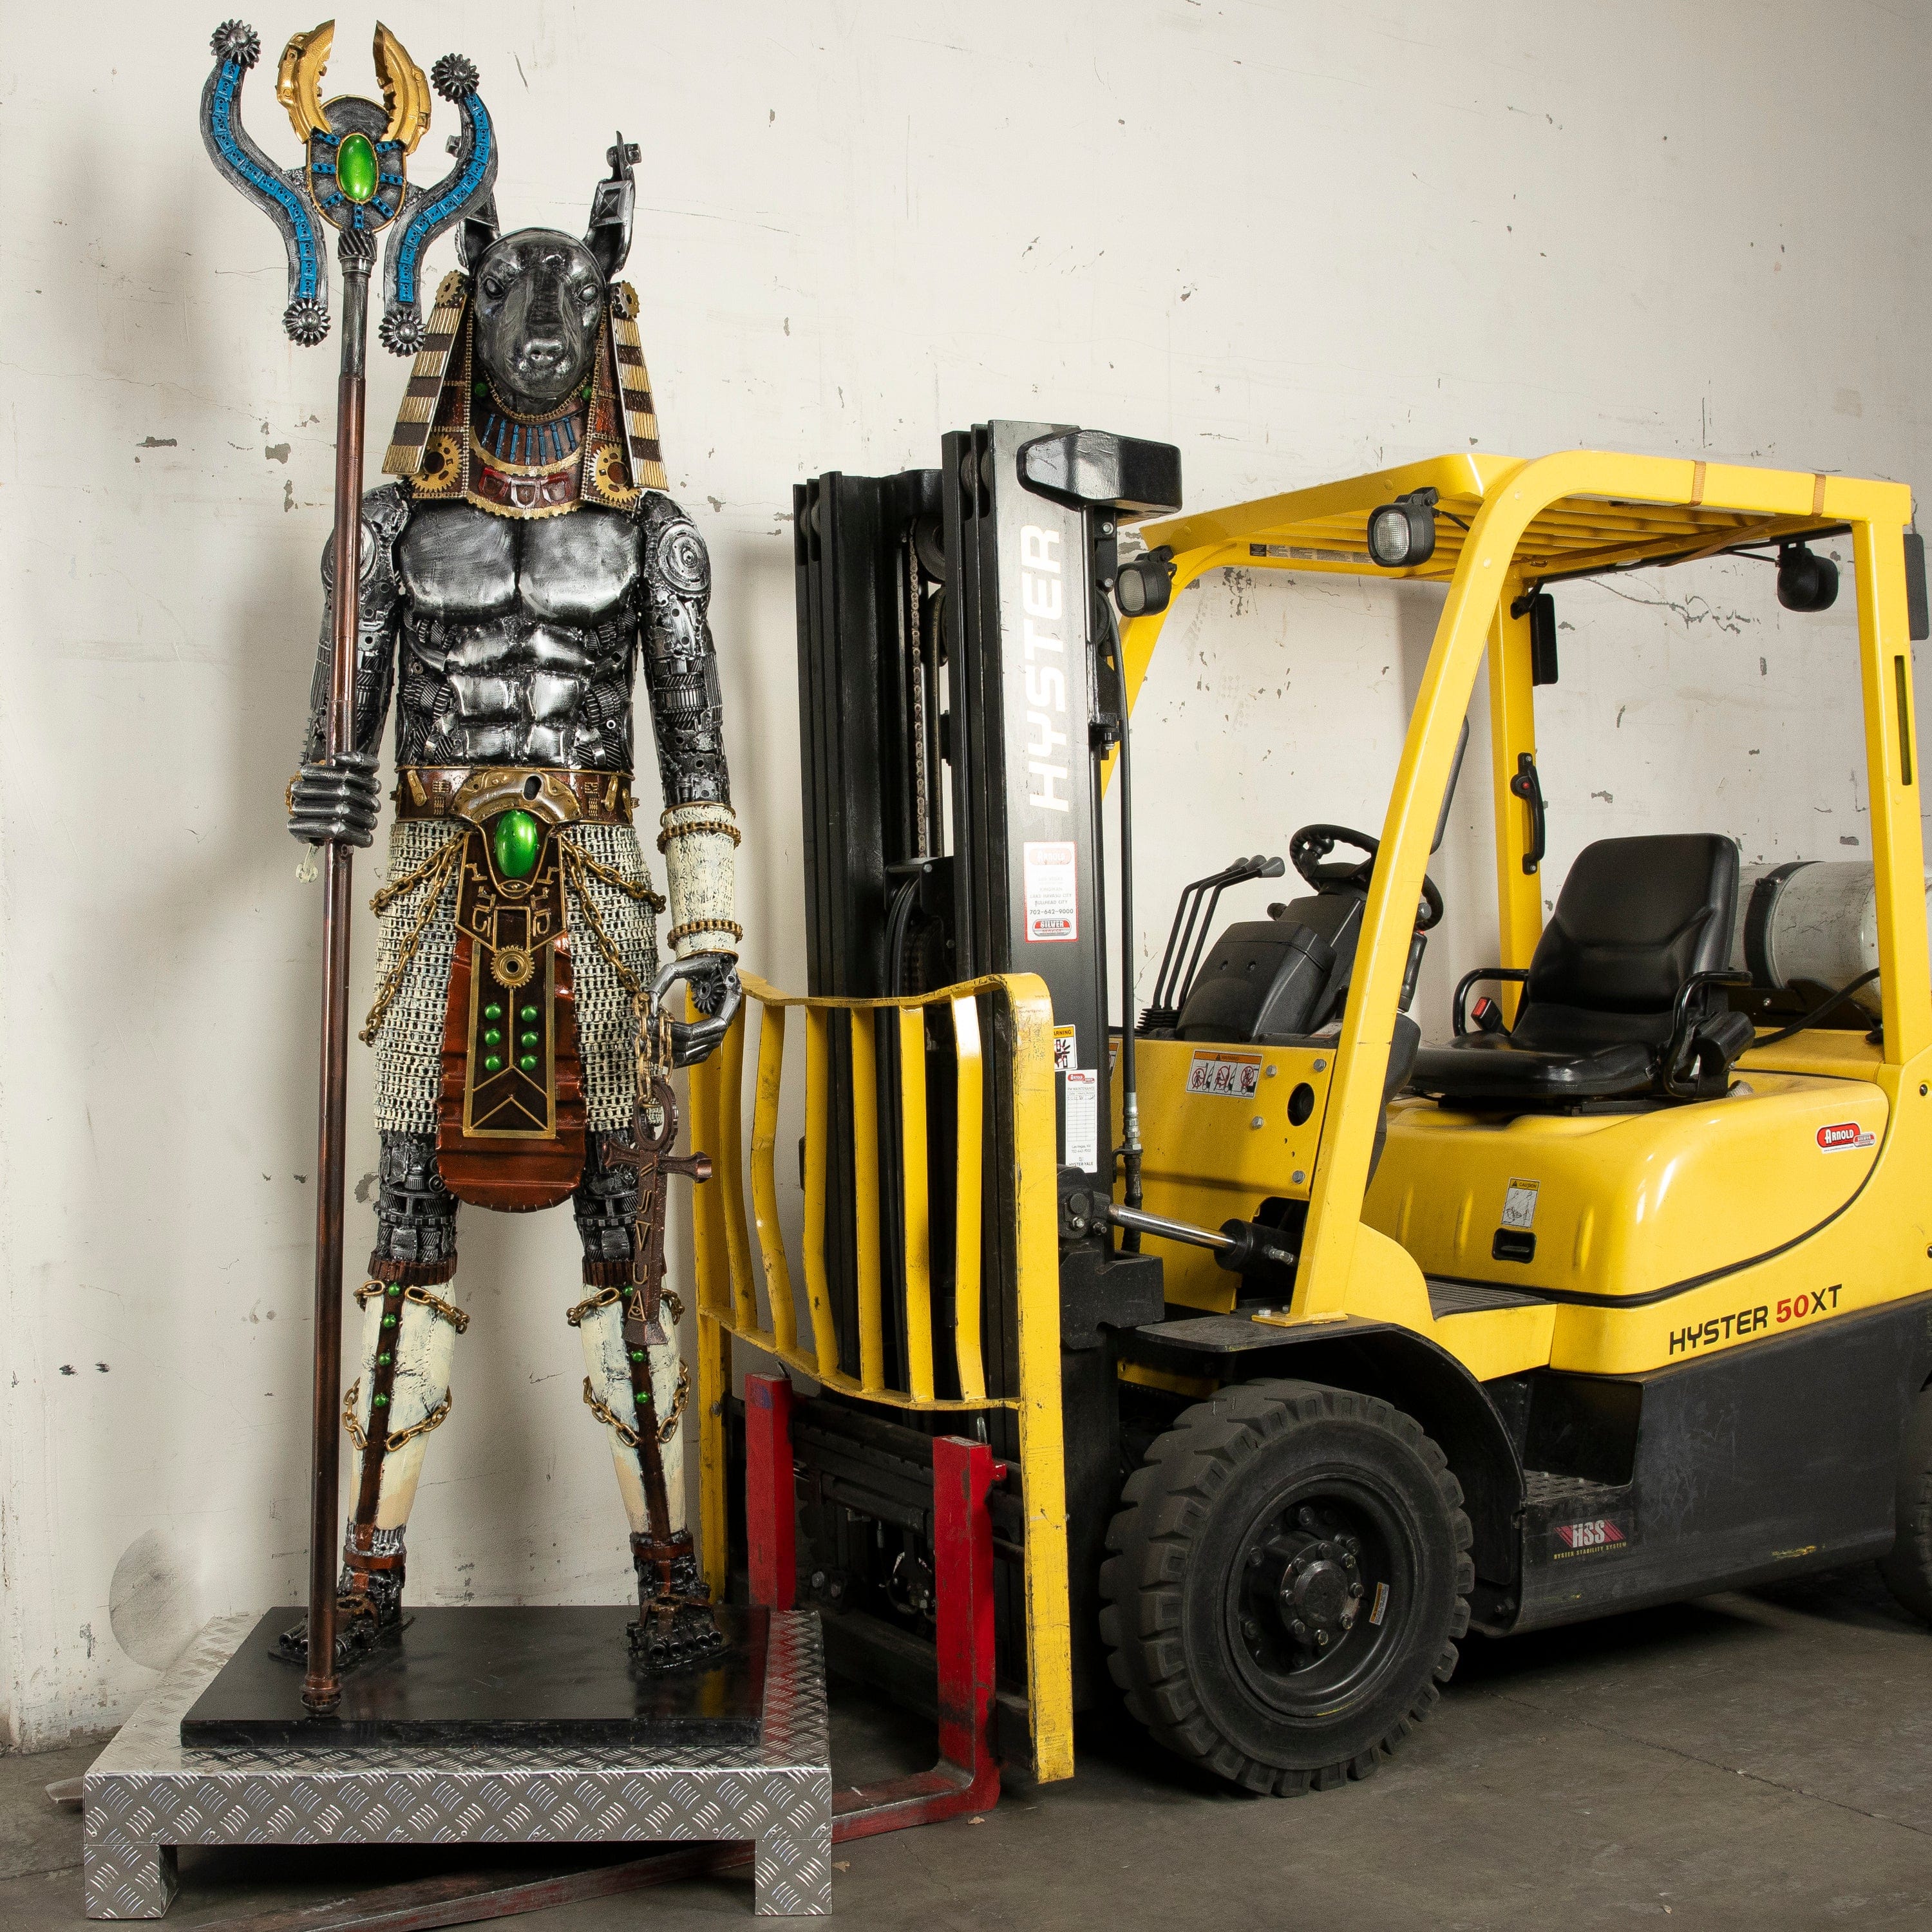 Kalifano Recycled Metal Art 91" Anubis Recycled Metal Sculpture Anubis RMS-ANU230-N01